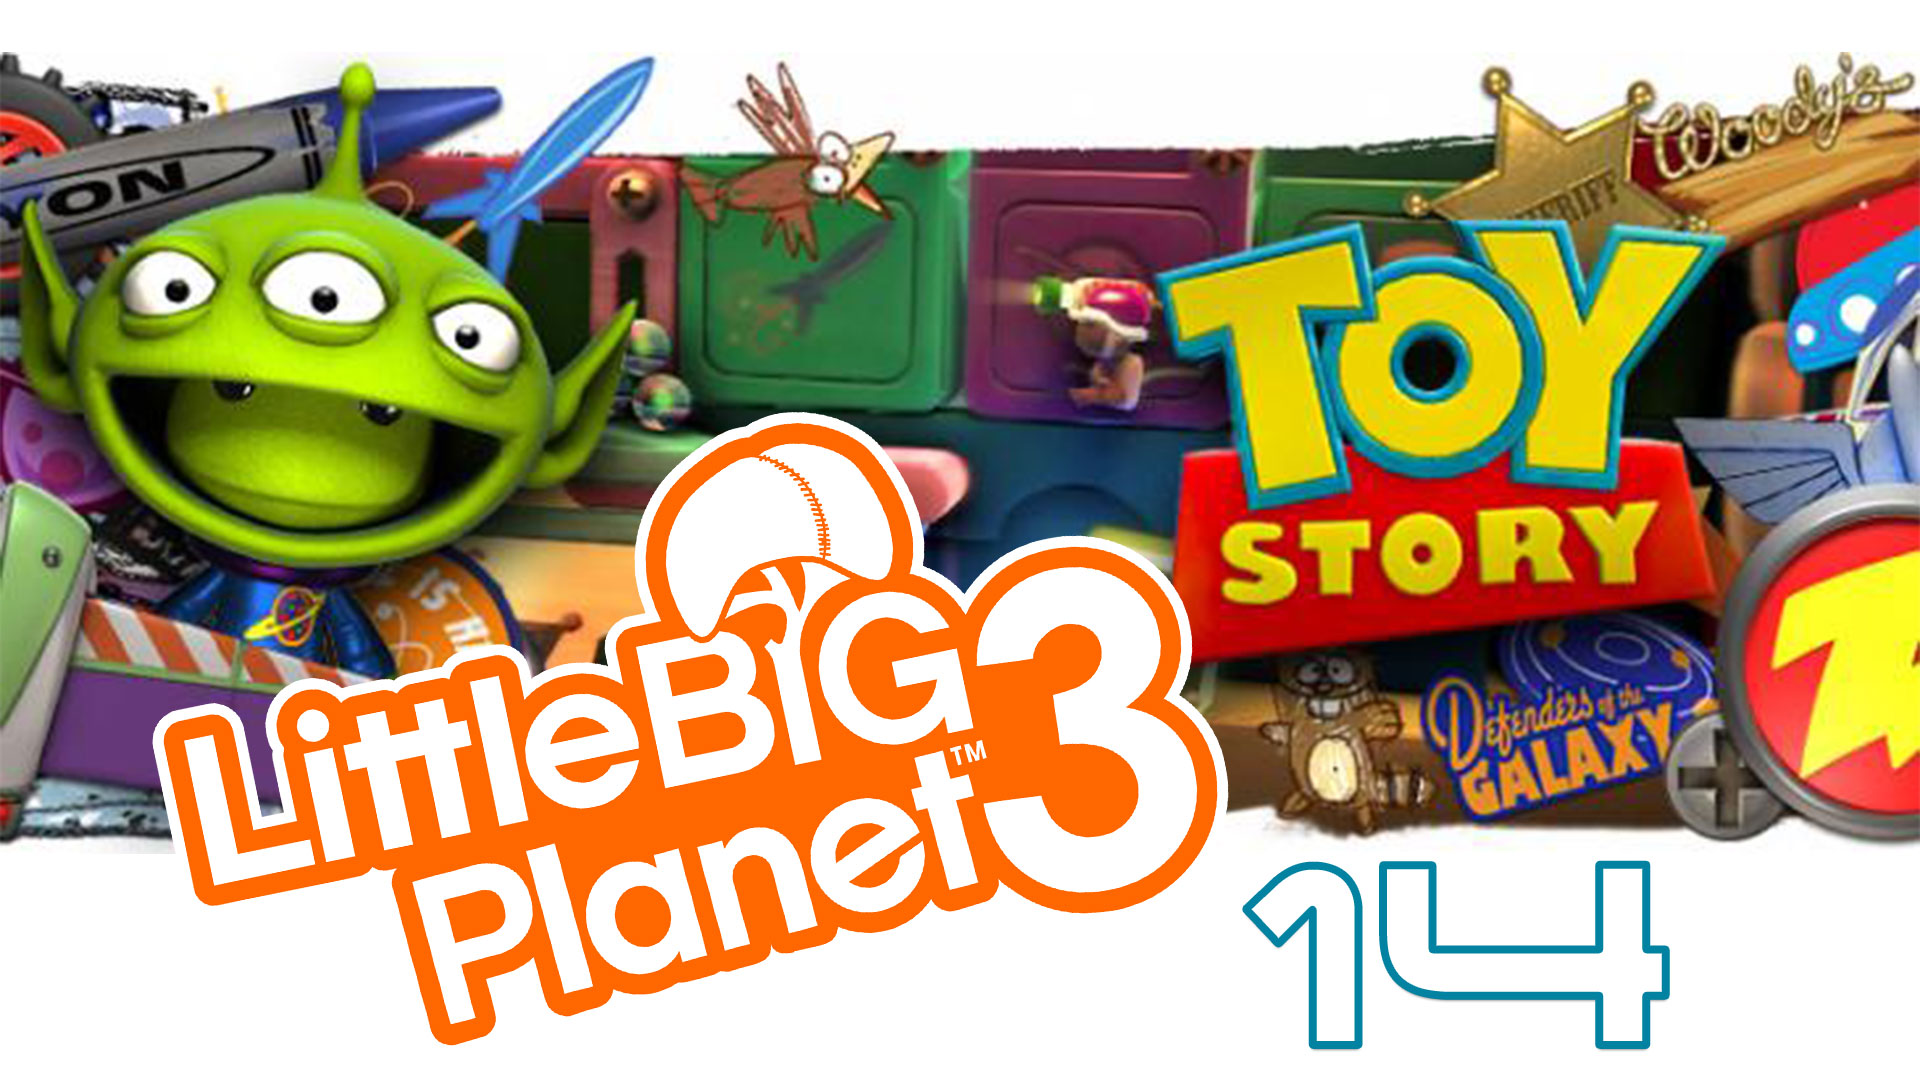 LittleBigPlanet 3 - Сезон 2 - Кооператив - История игрушек ч. 5 - Прохождение [#14] | PS4 (2016 г.)